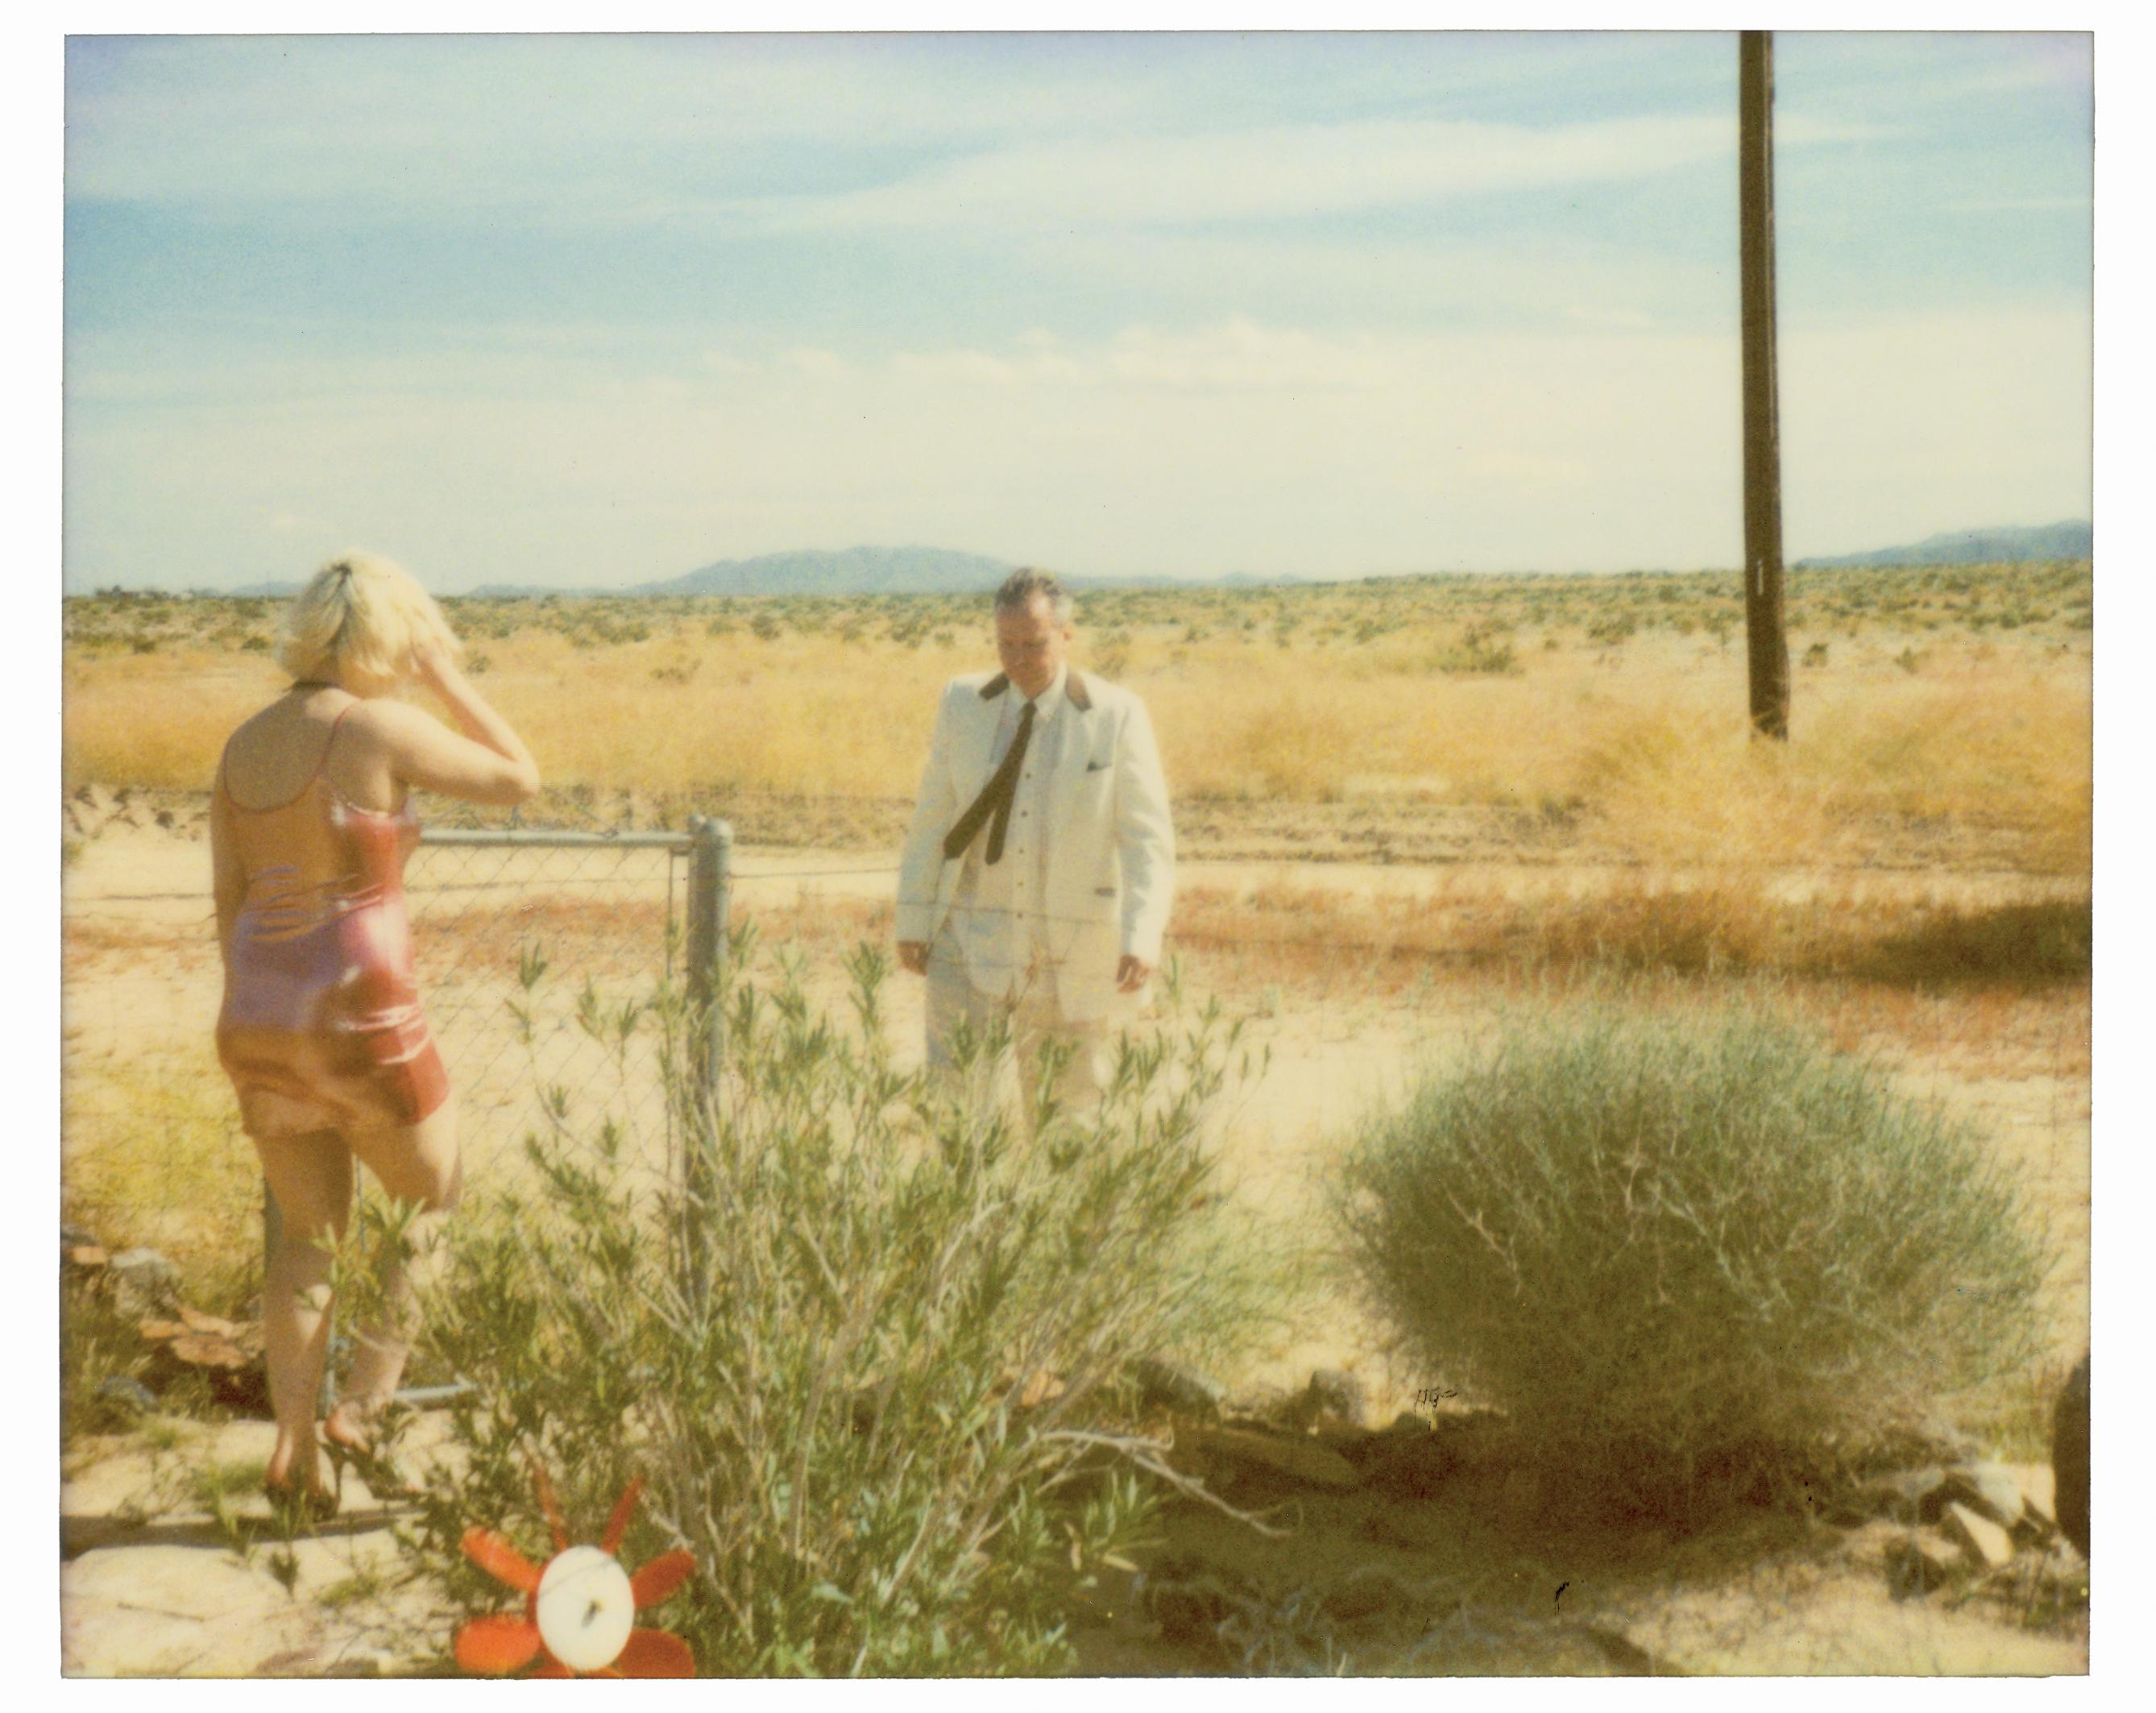 Stefanie Schneider Landscape Photograph - Wonder Valley (29 Palms, CA) - analog, mounted, installation, music, video, text